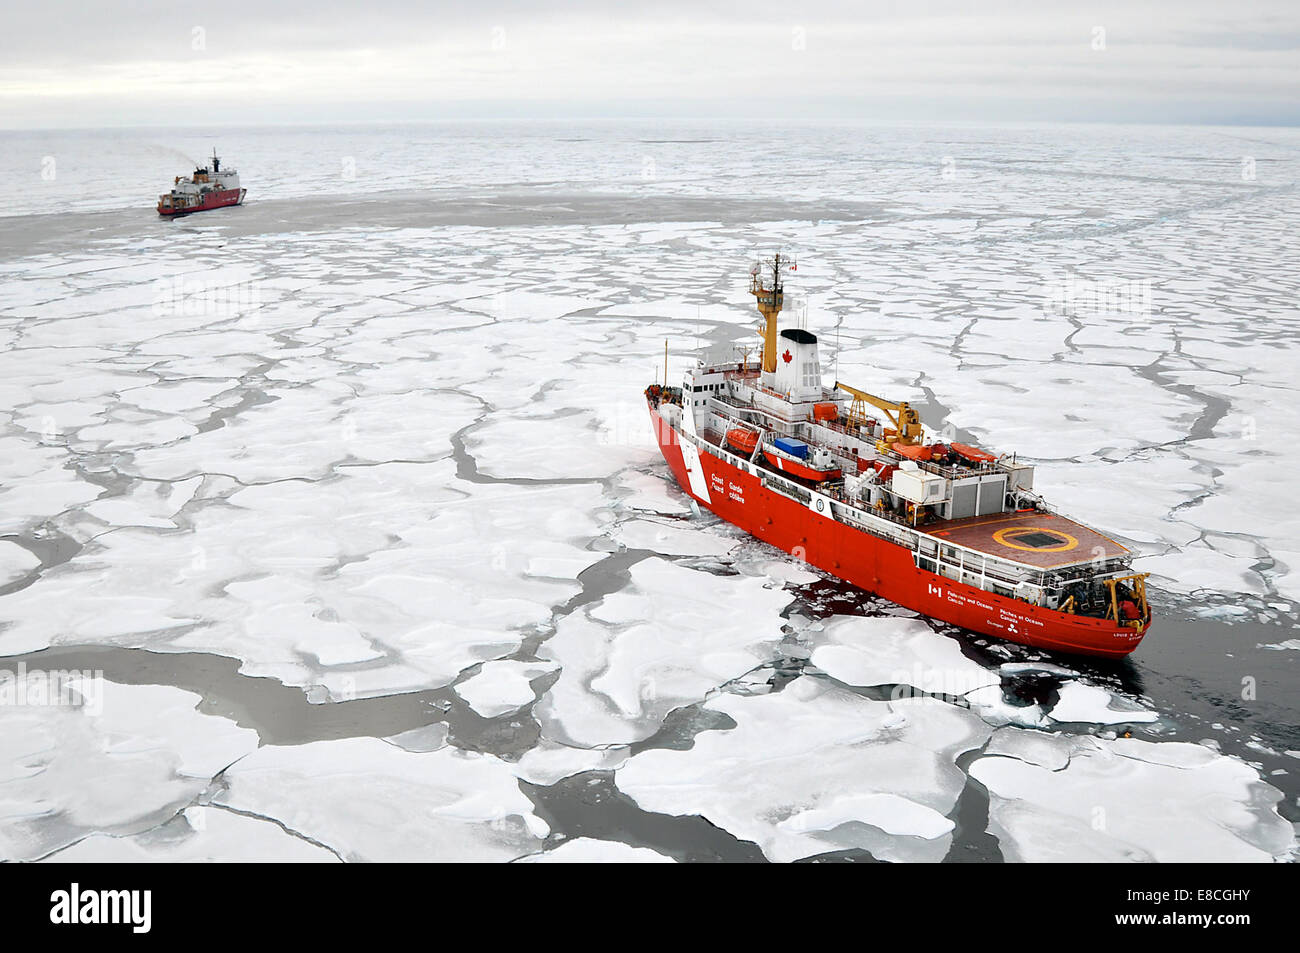 Schließung im arktischen Ozean – die kanadische Küstenwache Schiff Louis S. St-Laurent macht einen Ansatz für die Coast Guard Cutter Healy im arktischen Ozean 5. September 2009. Die beiden Schiffe nehmen Teil an einer mehrjährigen, Multi-Agentur arktischen Umfrage, die hilft defin Stockfoto